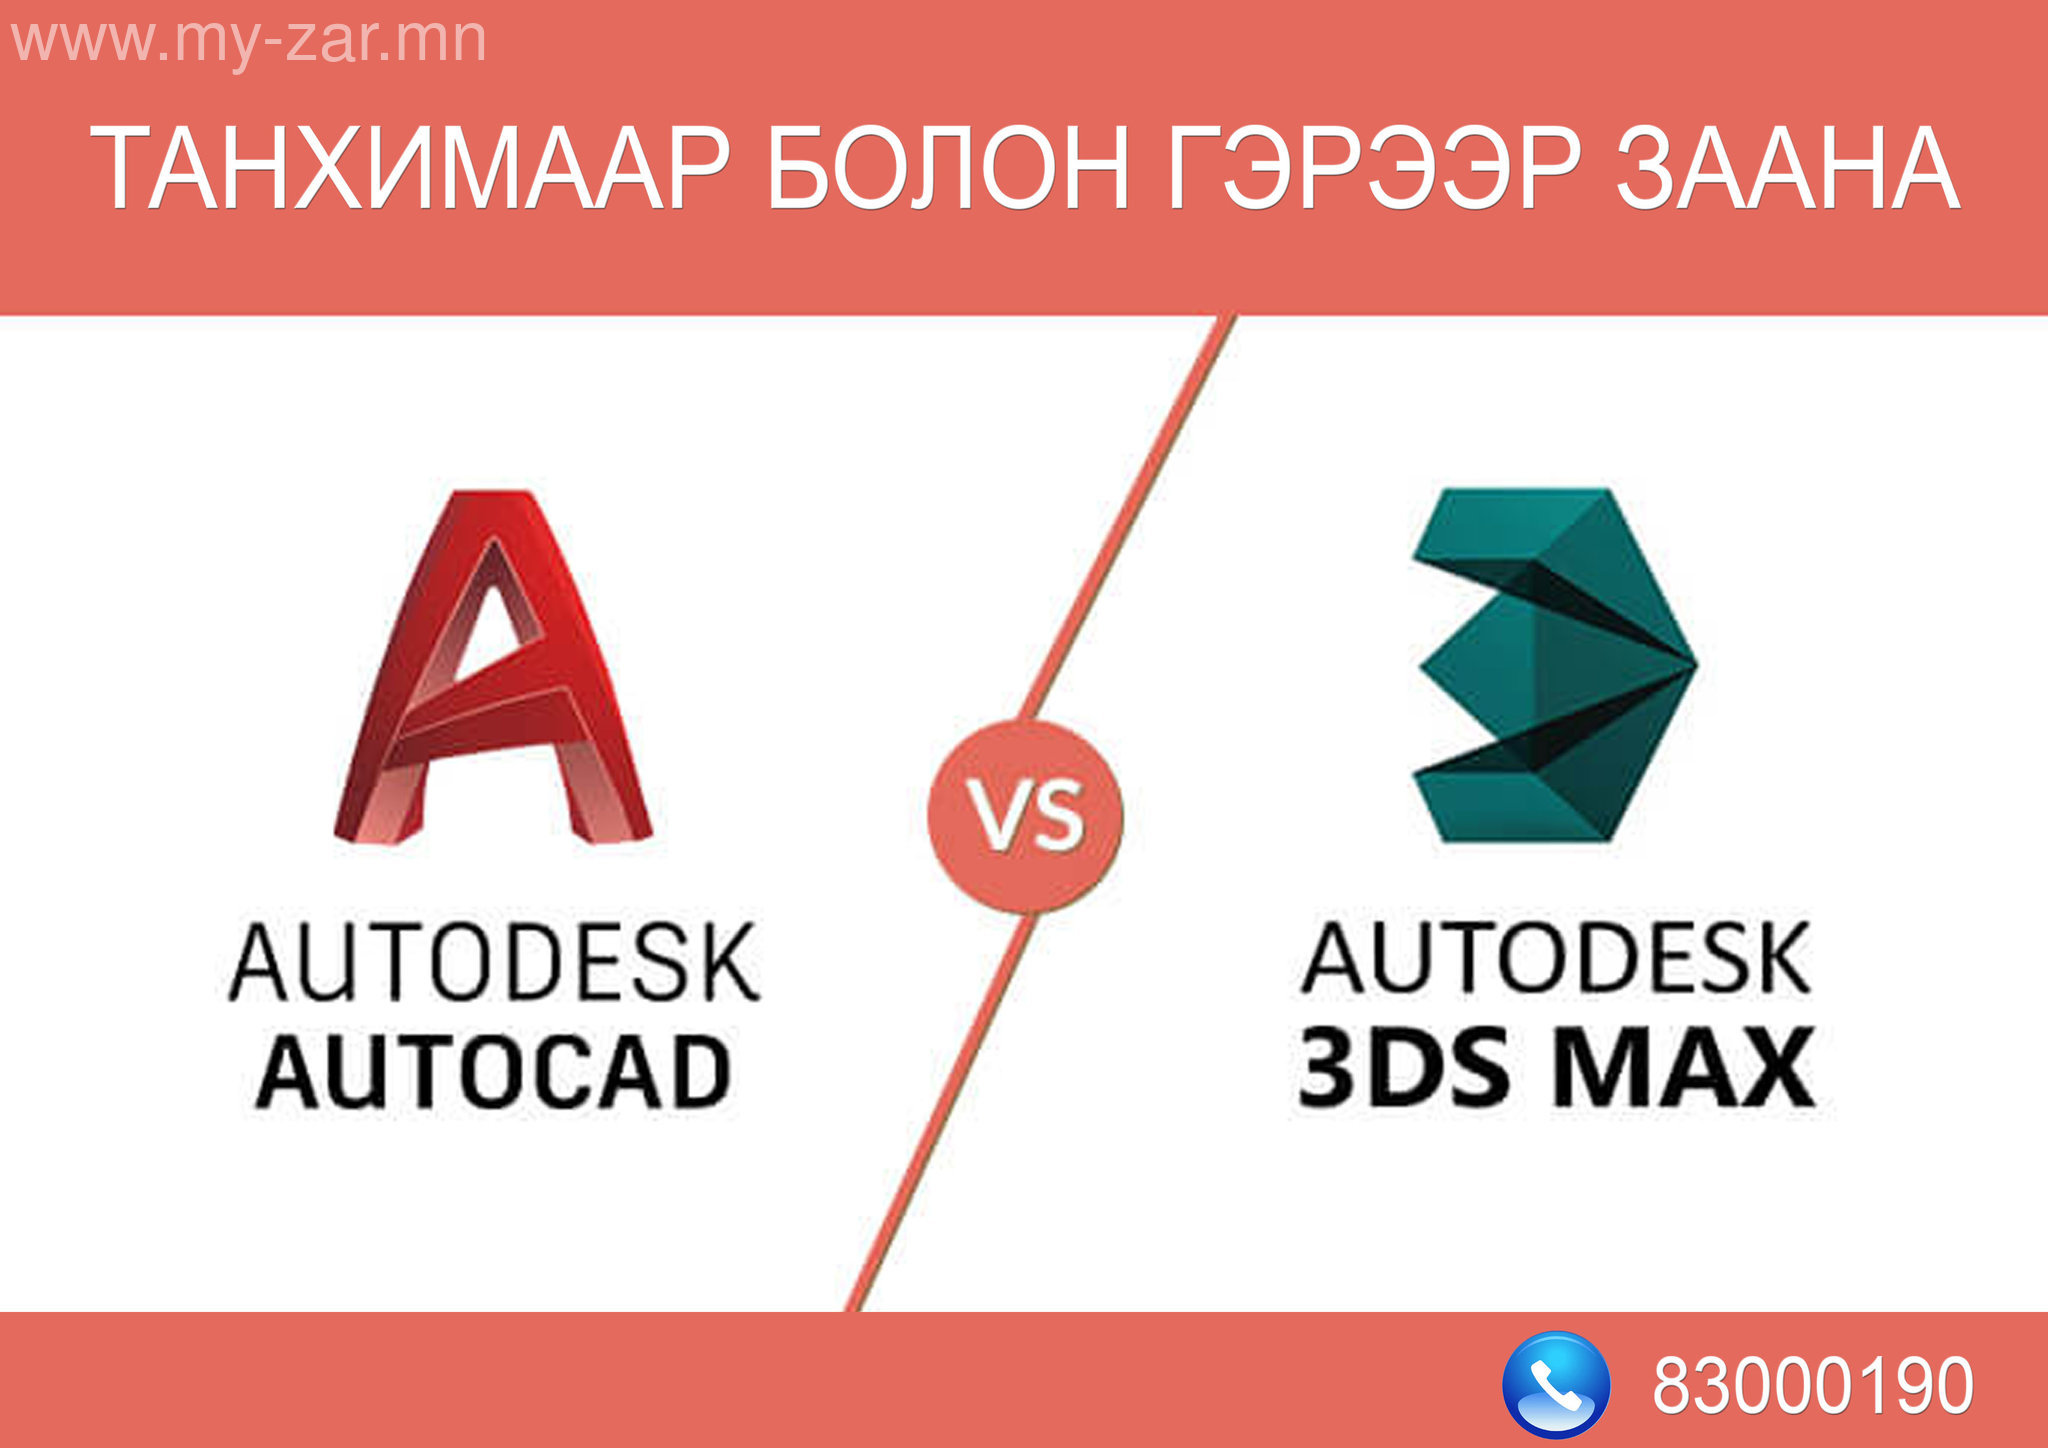 Autocad - Ажлын талбар, зурах, засах, хэмжээ, хэвлэх гэх мэт. 3ds Max - 